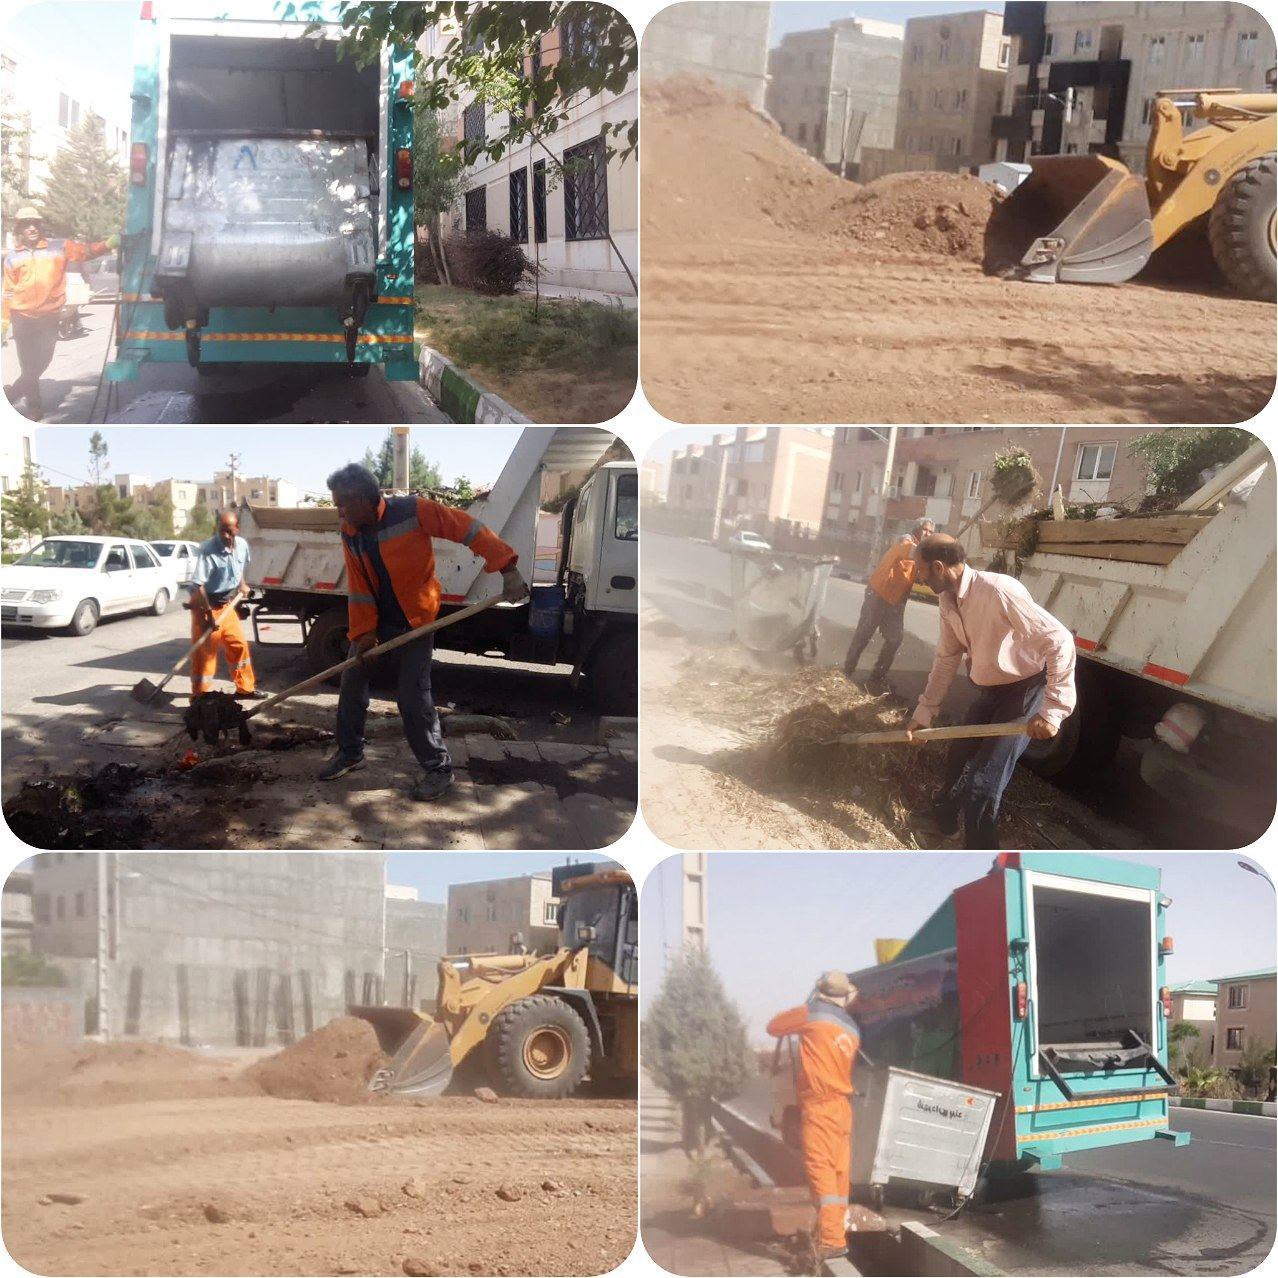 جمع آوری نخاله های ساختمانی و شستشوی مکانیزه باکس های زباله در مناطق تحت مدیریت شهرداری پرند